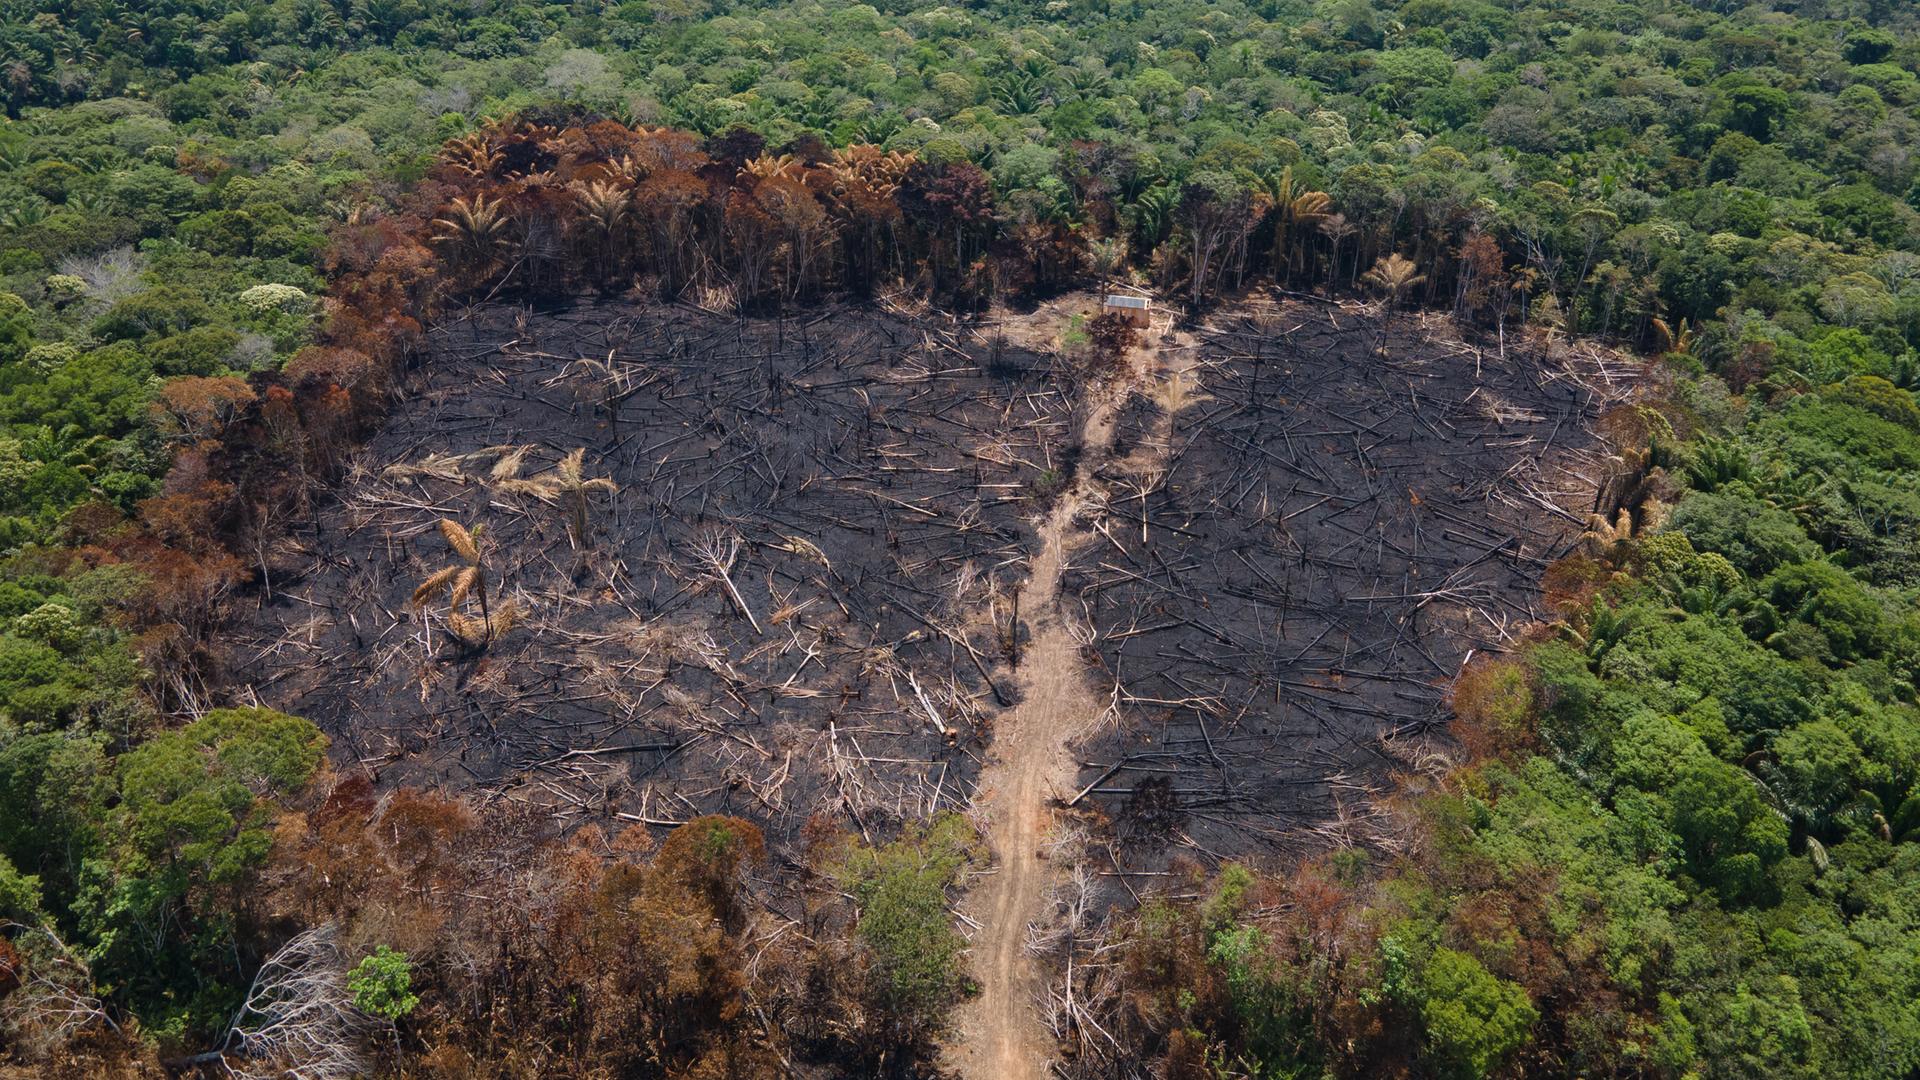 Luftblick auf eine verbrannte Fläche im Amazonas-Urwald nahe der BR-319 Autobahn.